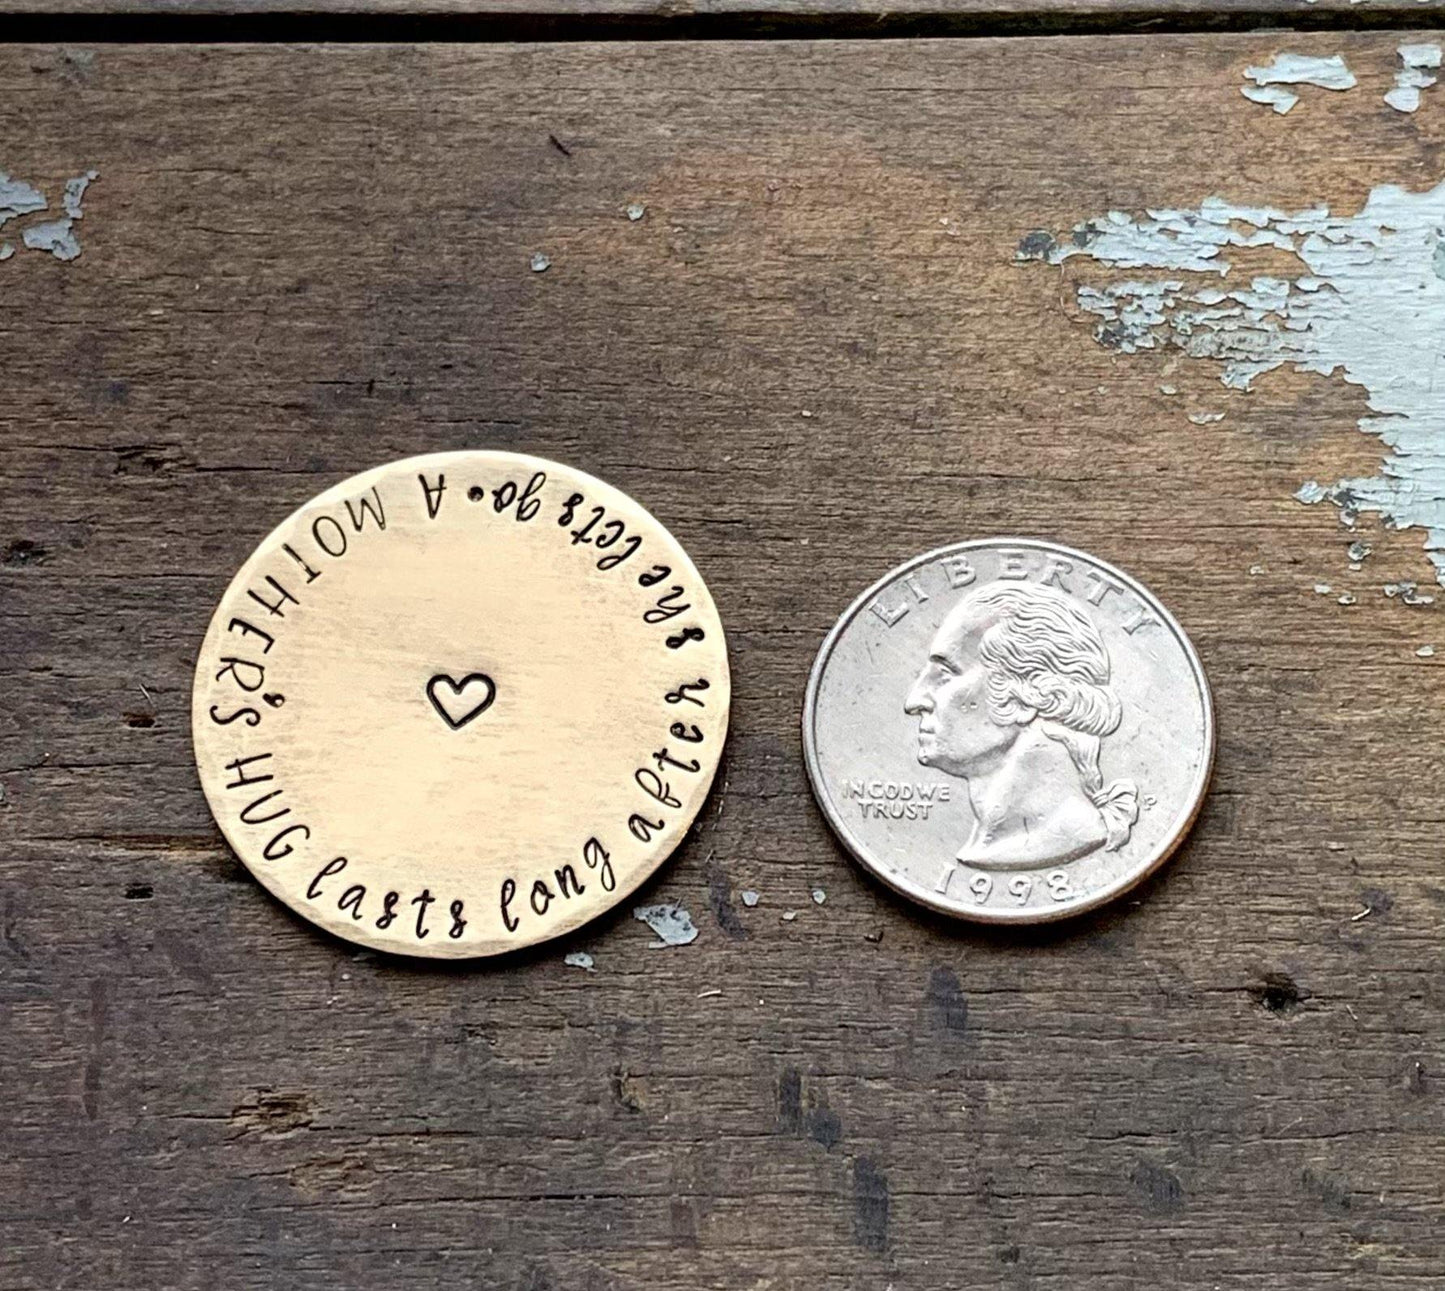 1.25" brass coin